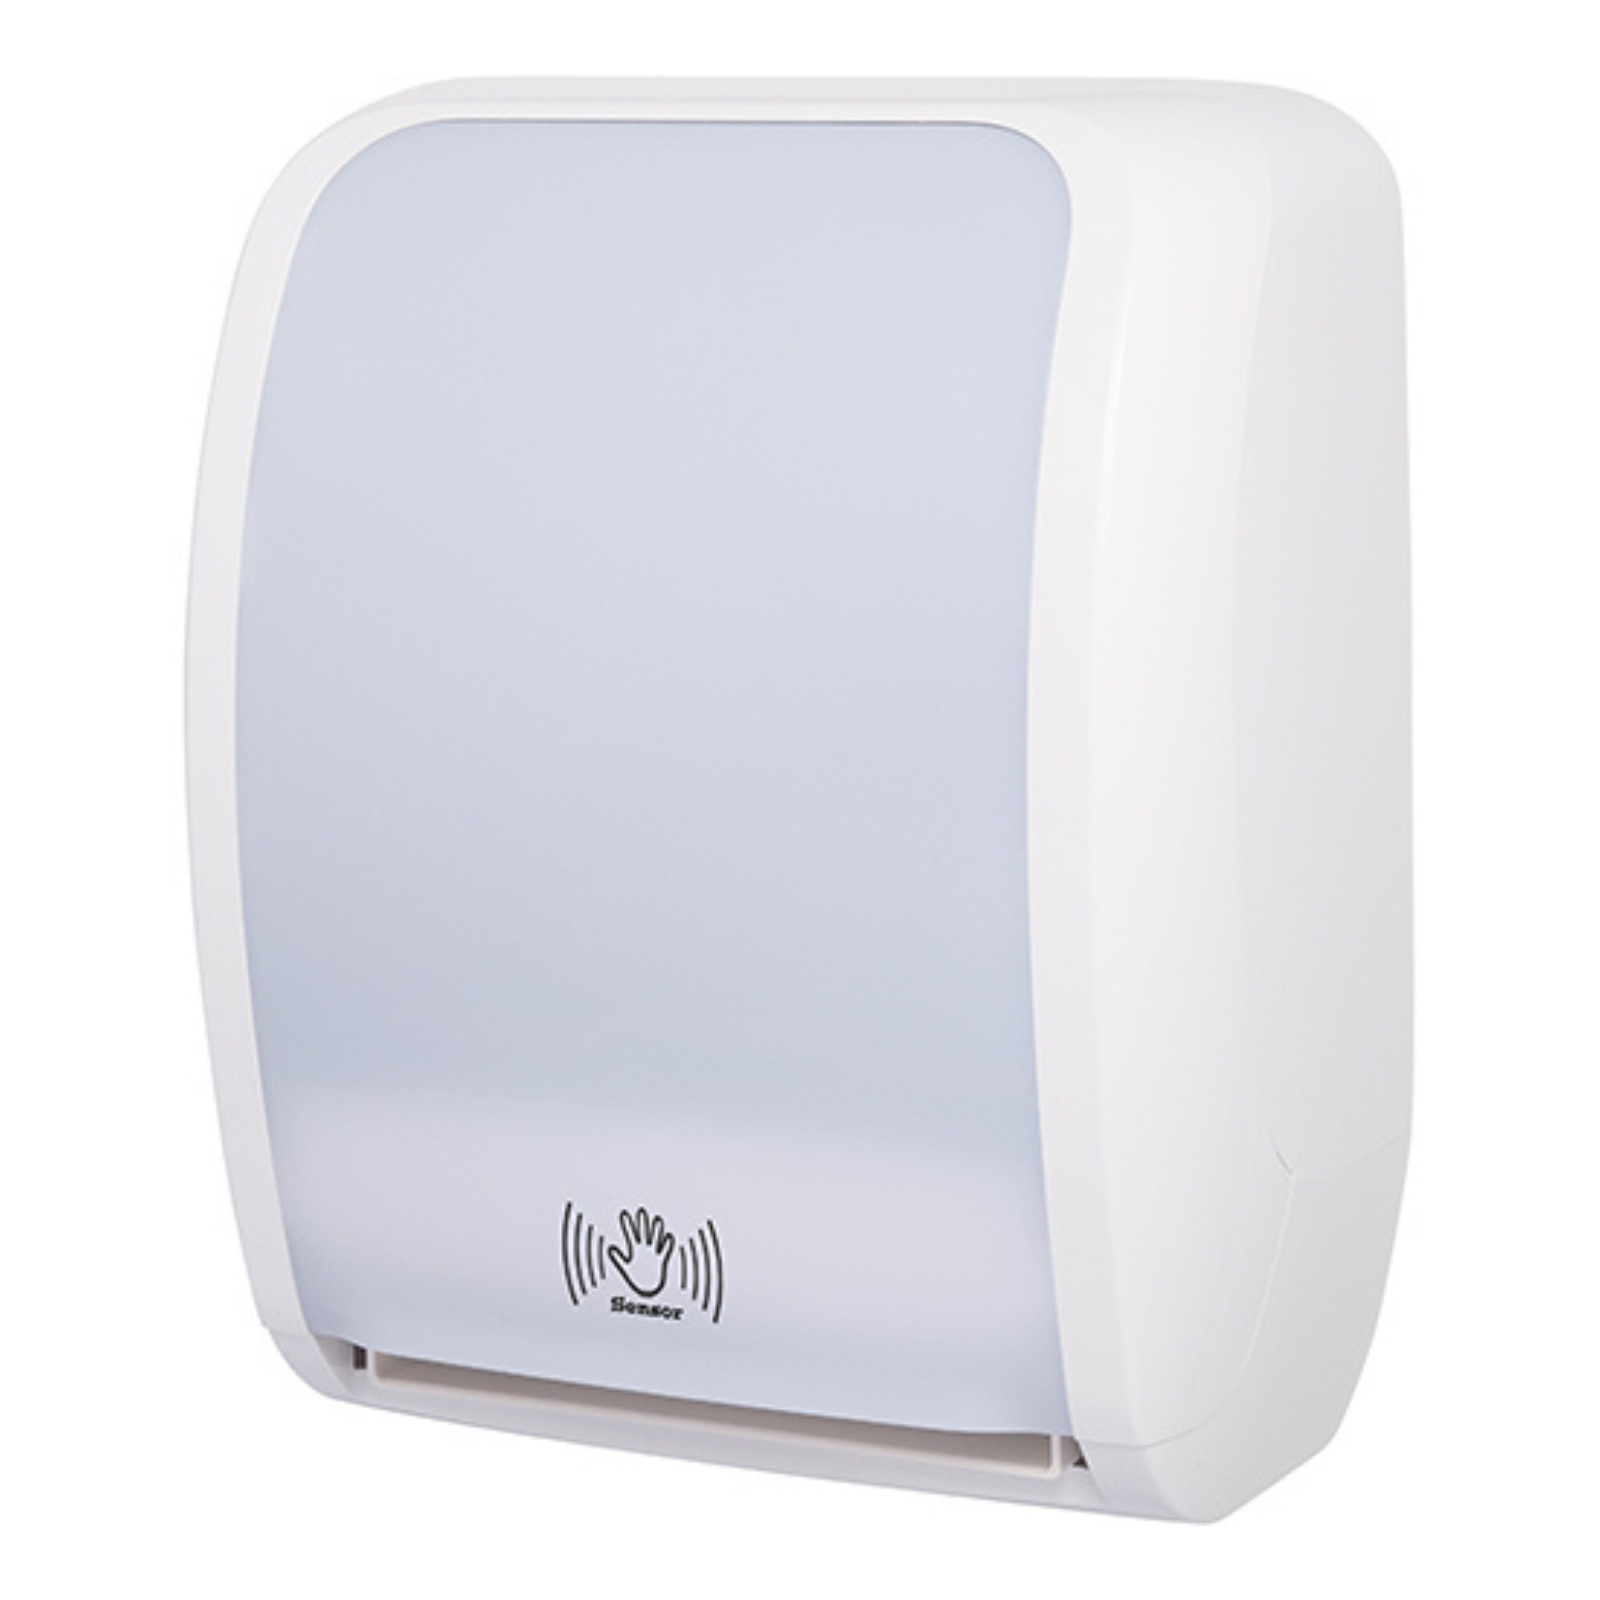 Pura - Hand Towel Roll Dispenser (Sensor) - White/White